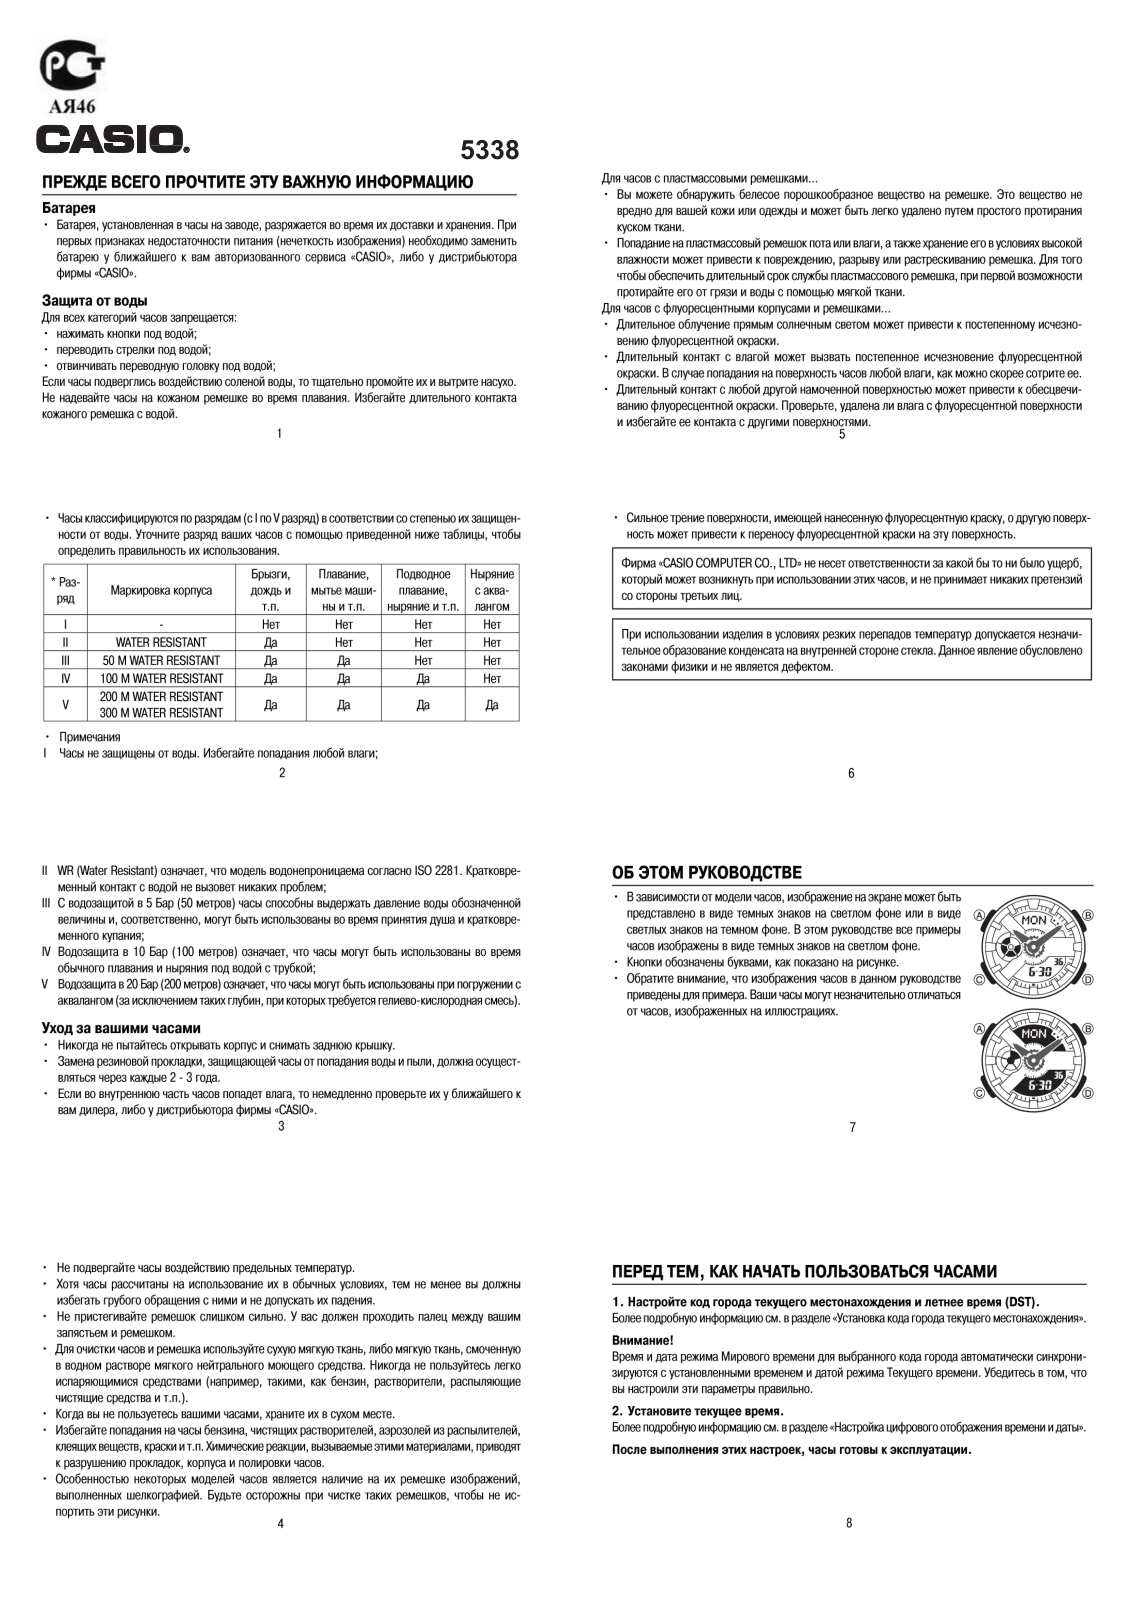 Casio BA-110PP-1A User Manual